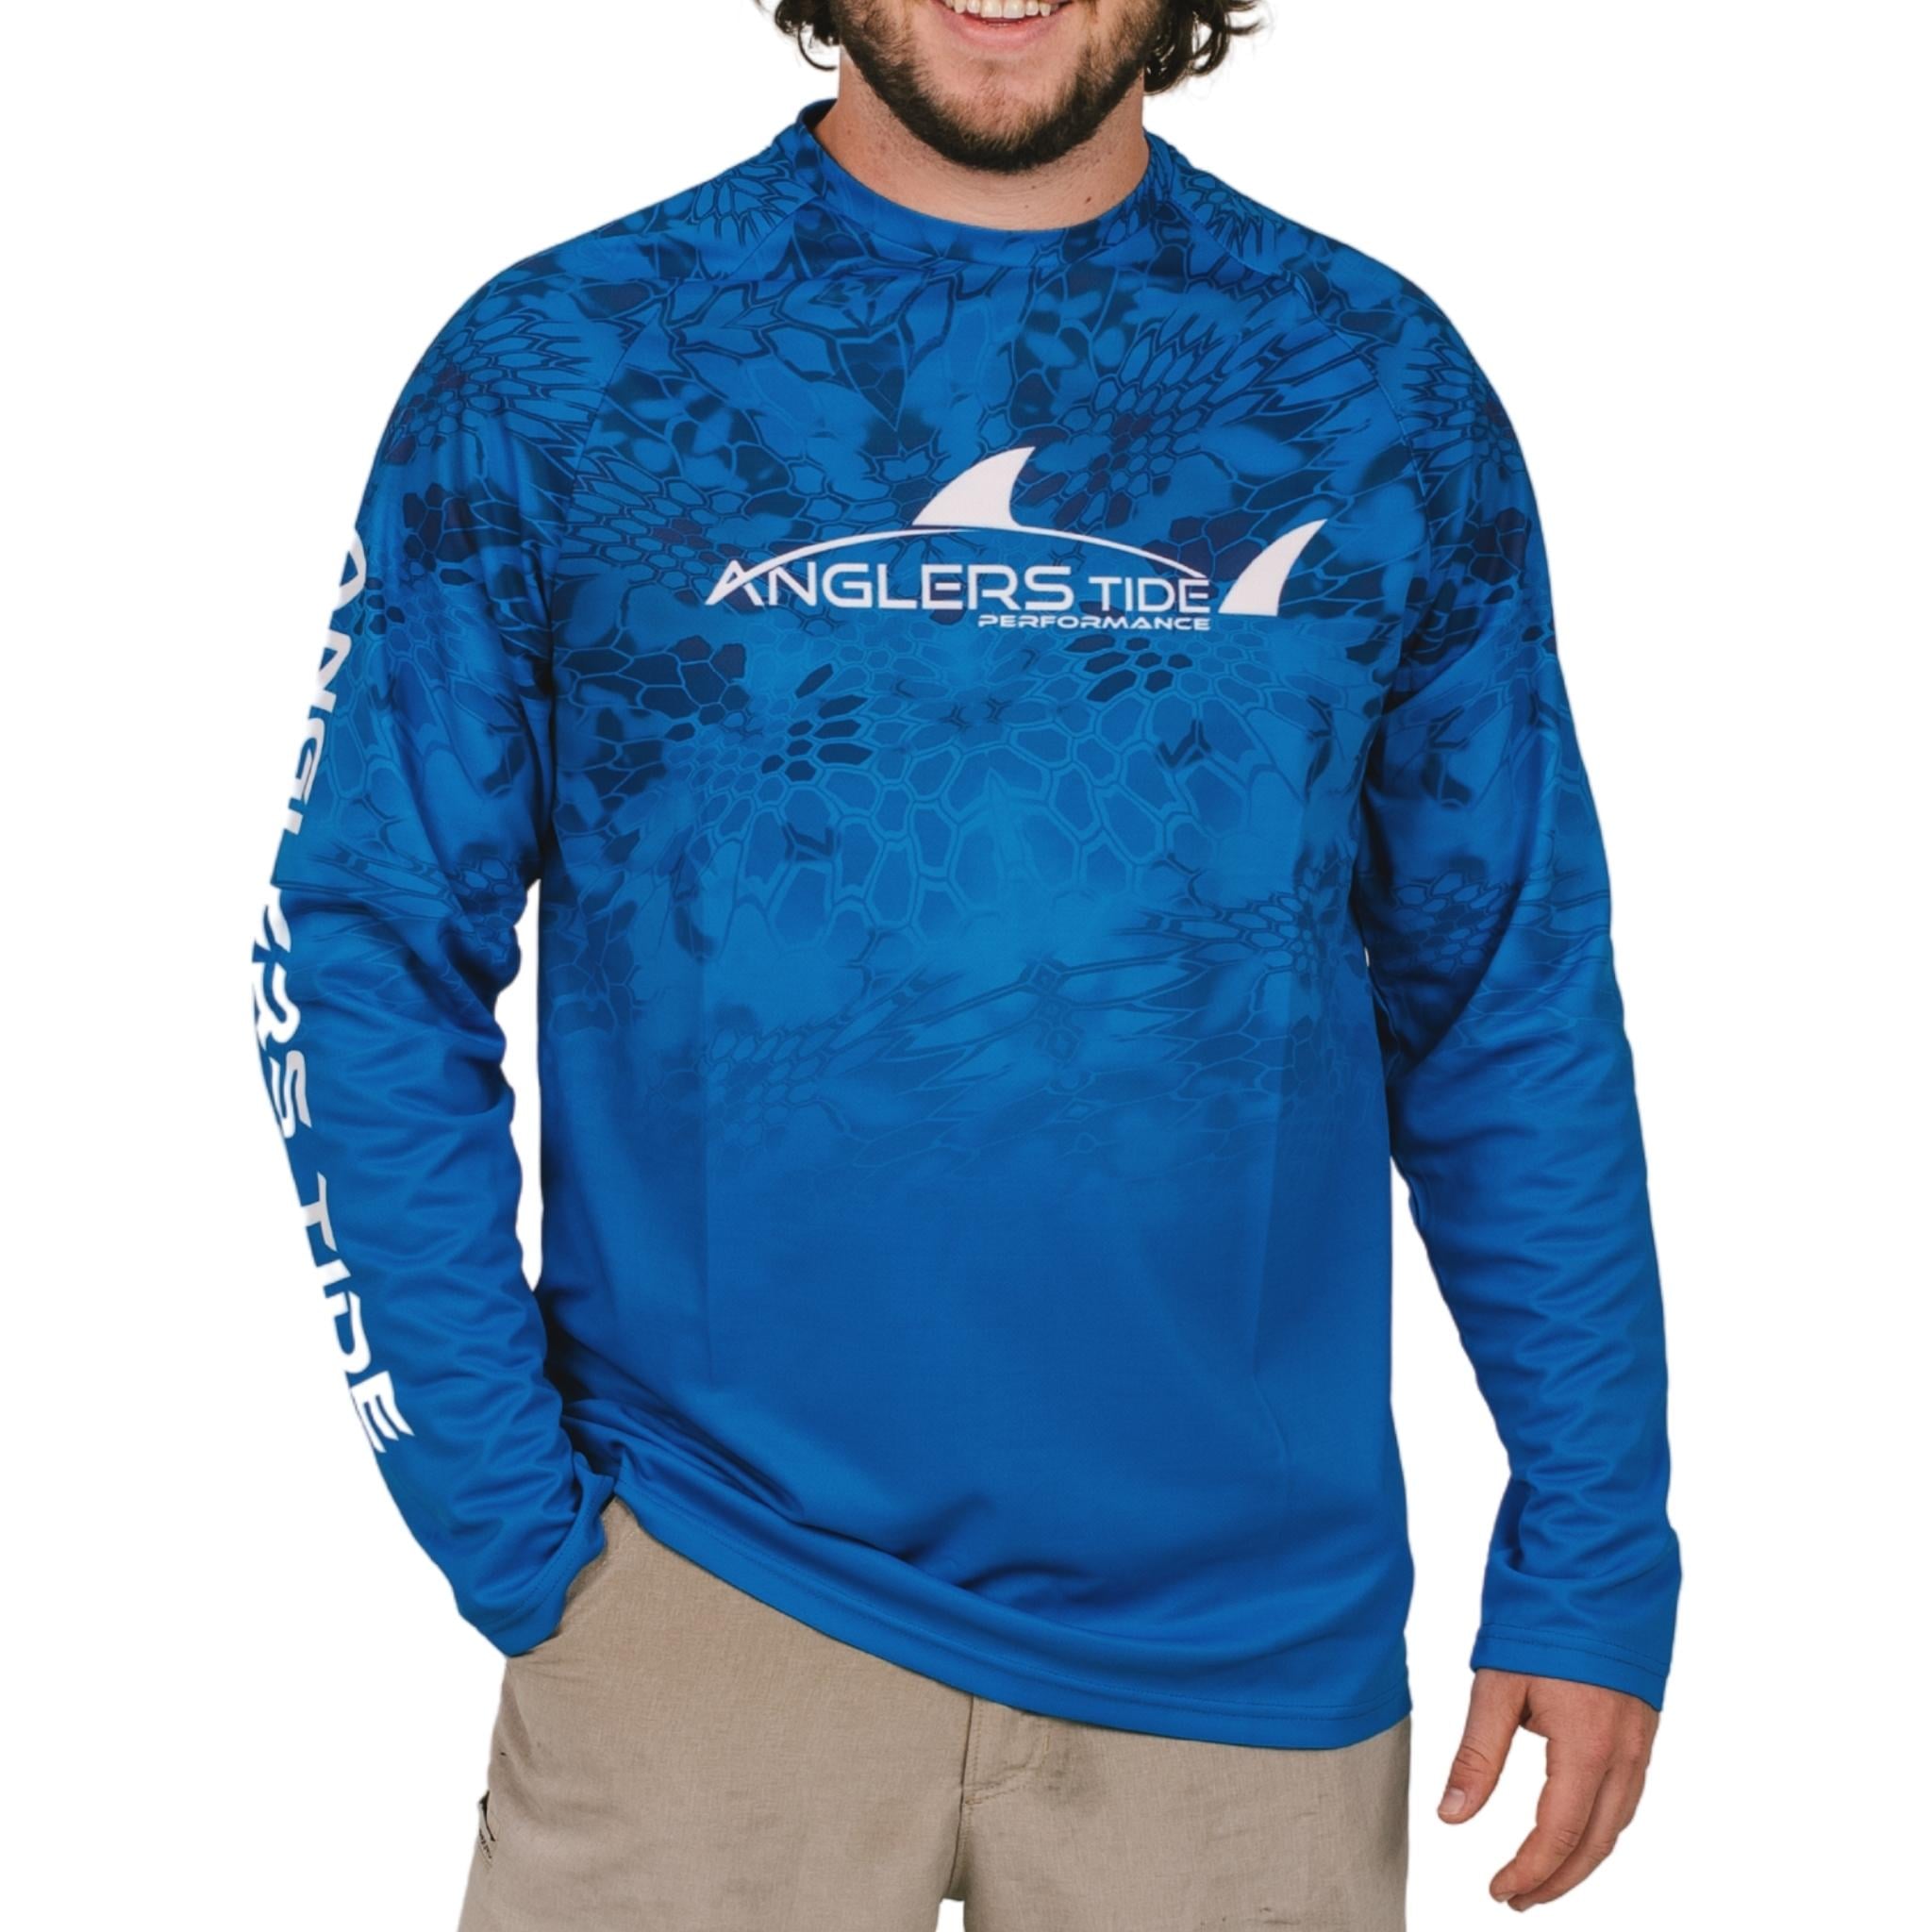 http://anglerstide.com/cdn/shop/products/zodiac-blue-long-sleeve-fishing-shirt-03.jpg?v=1651100988